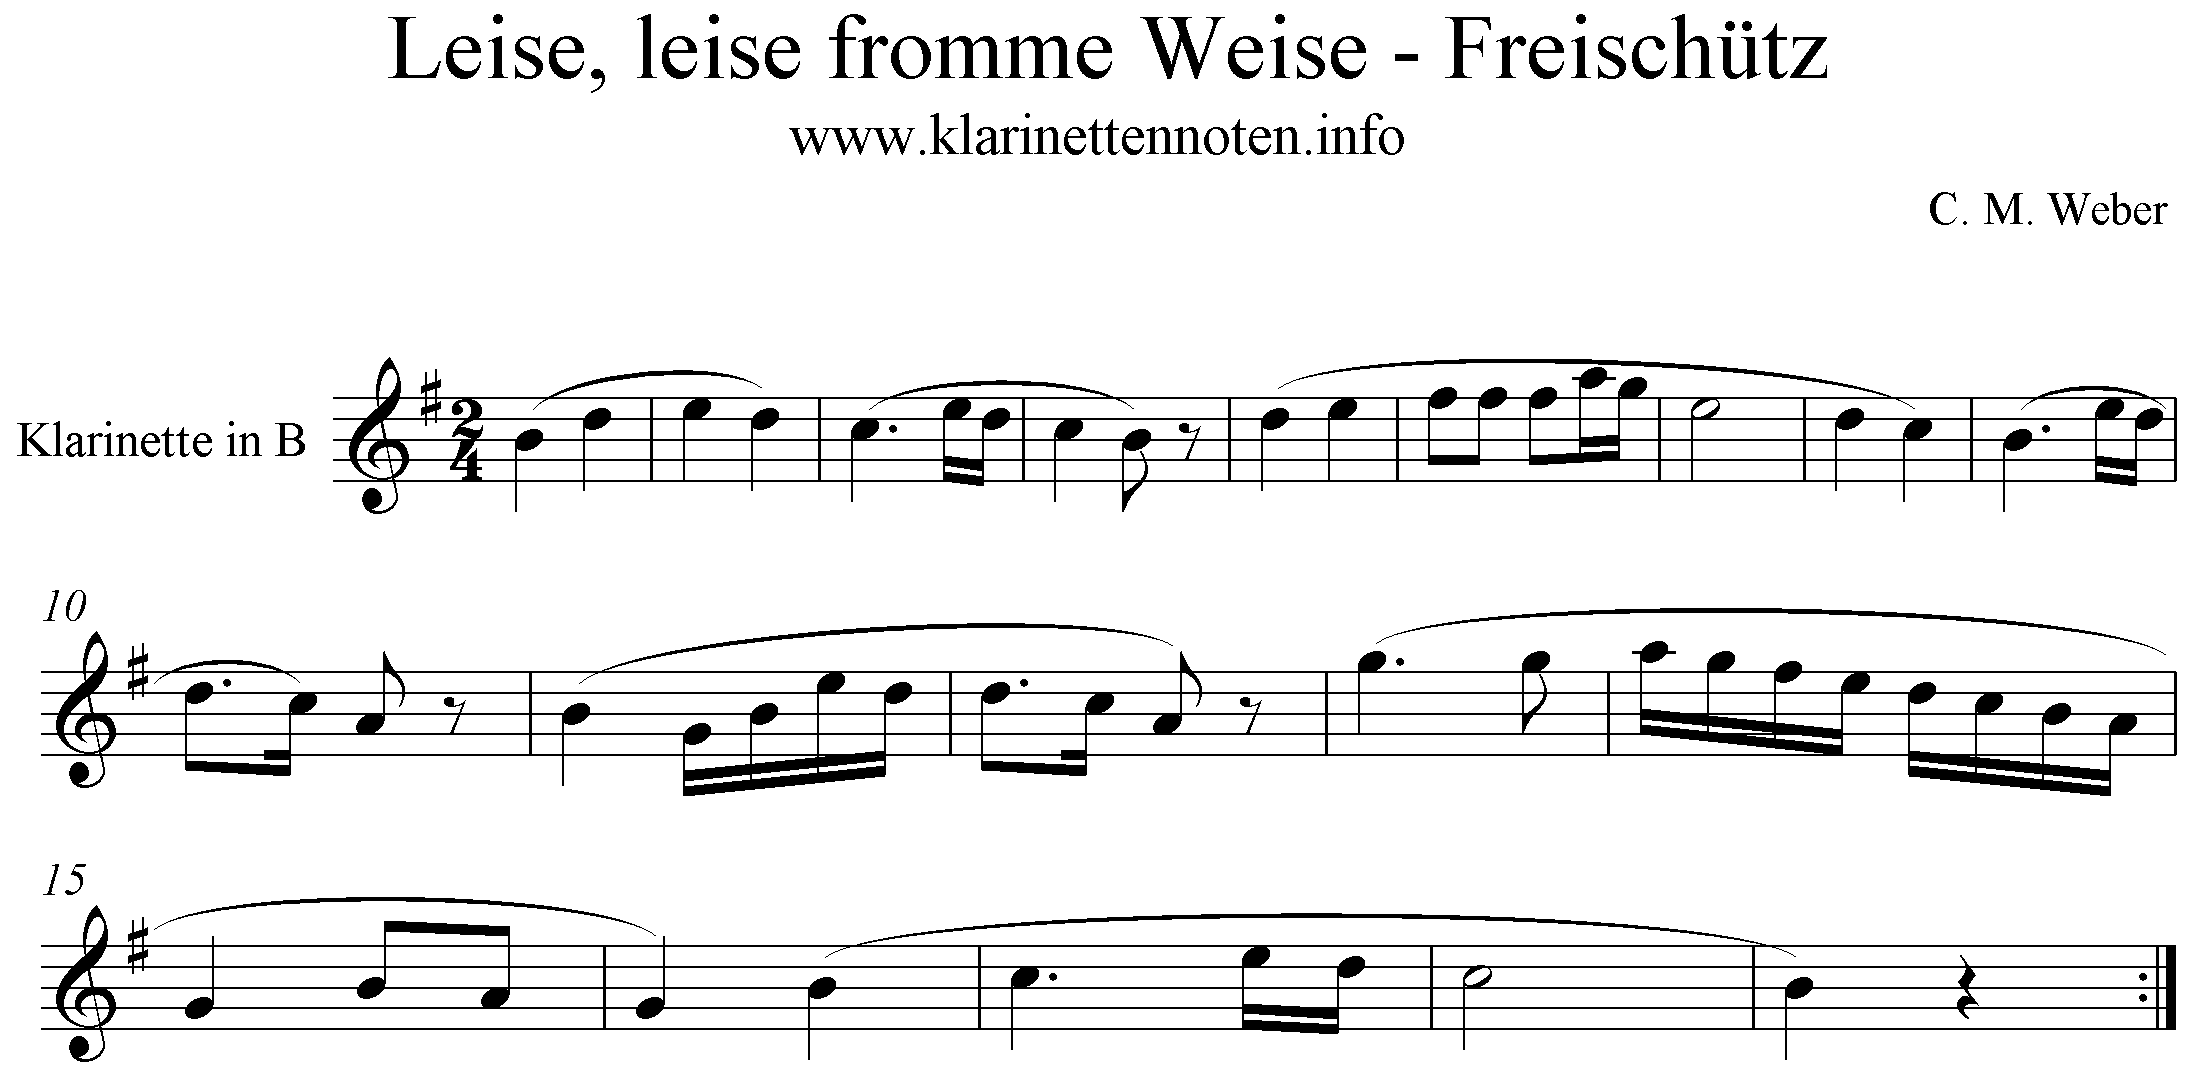 noten- C. M. Weber- Der Freischütz, Leise leise fromme Weise